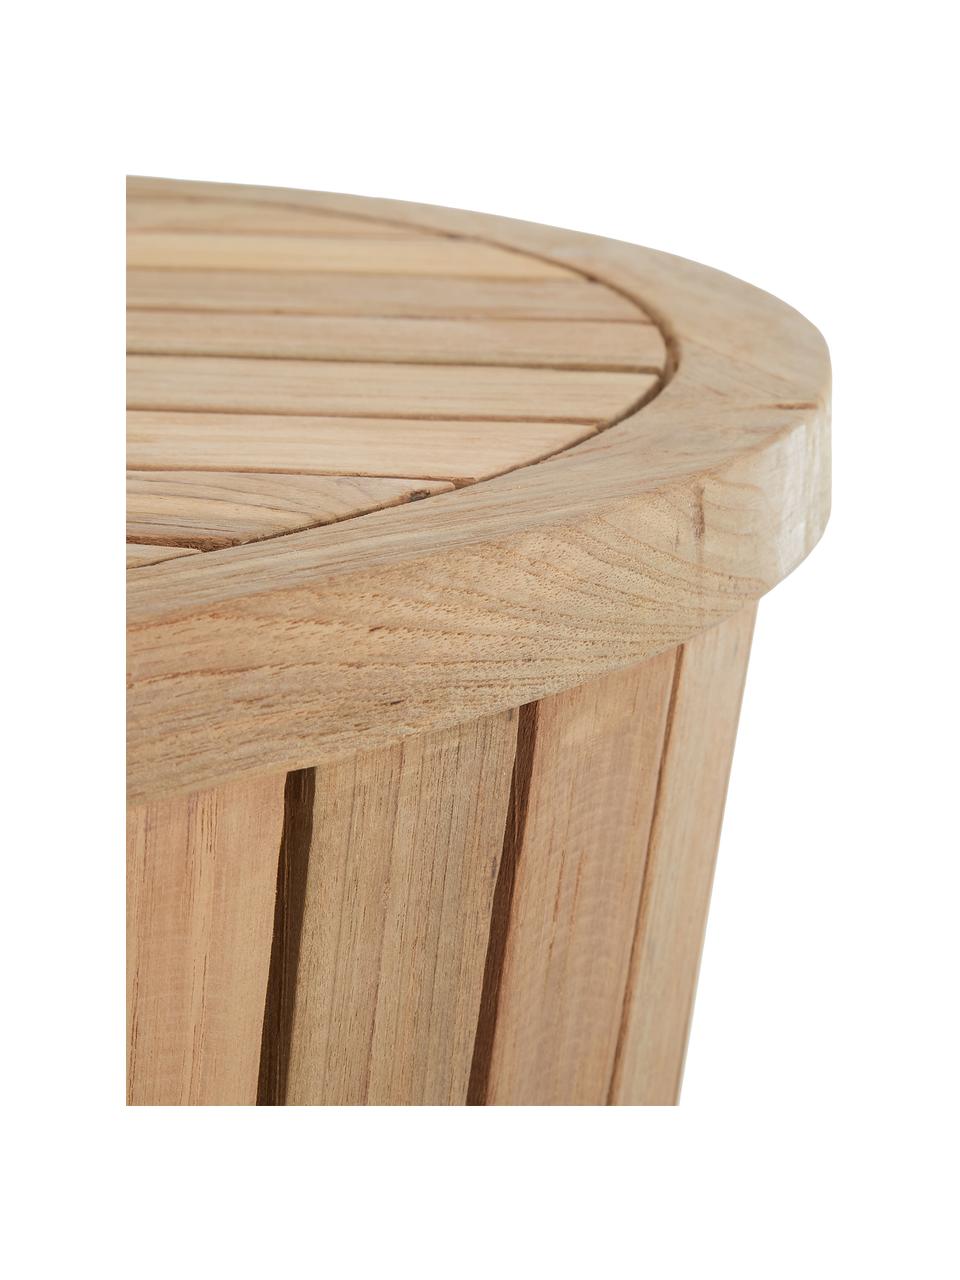 Zahradní odkládací stolek z teakového dřeva Circus, Recyklované teakové dřevo, Teakové dřevo, Ø 63 cm, V 43 cm